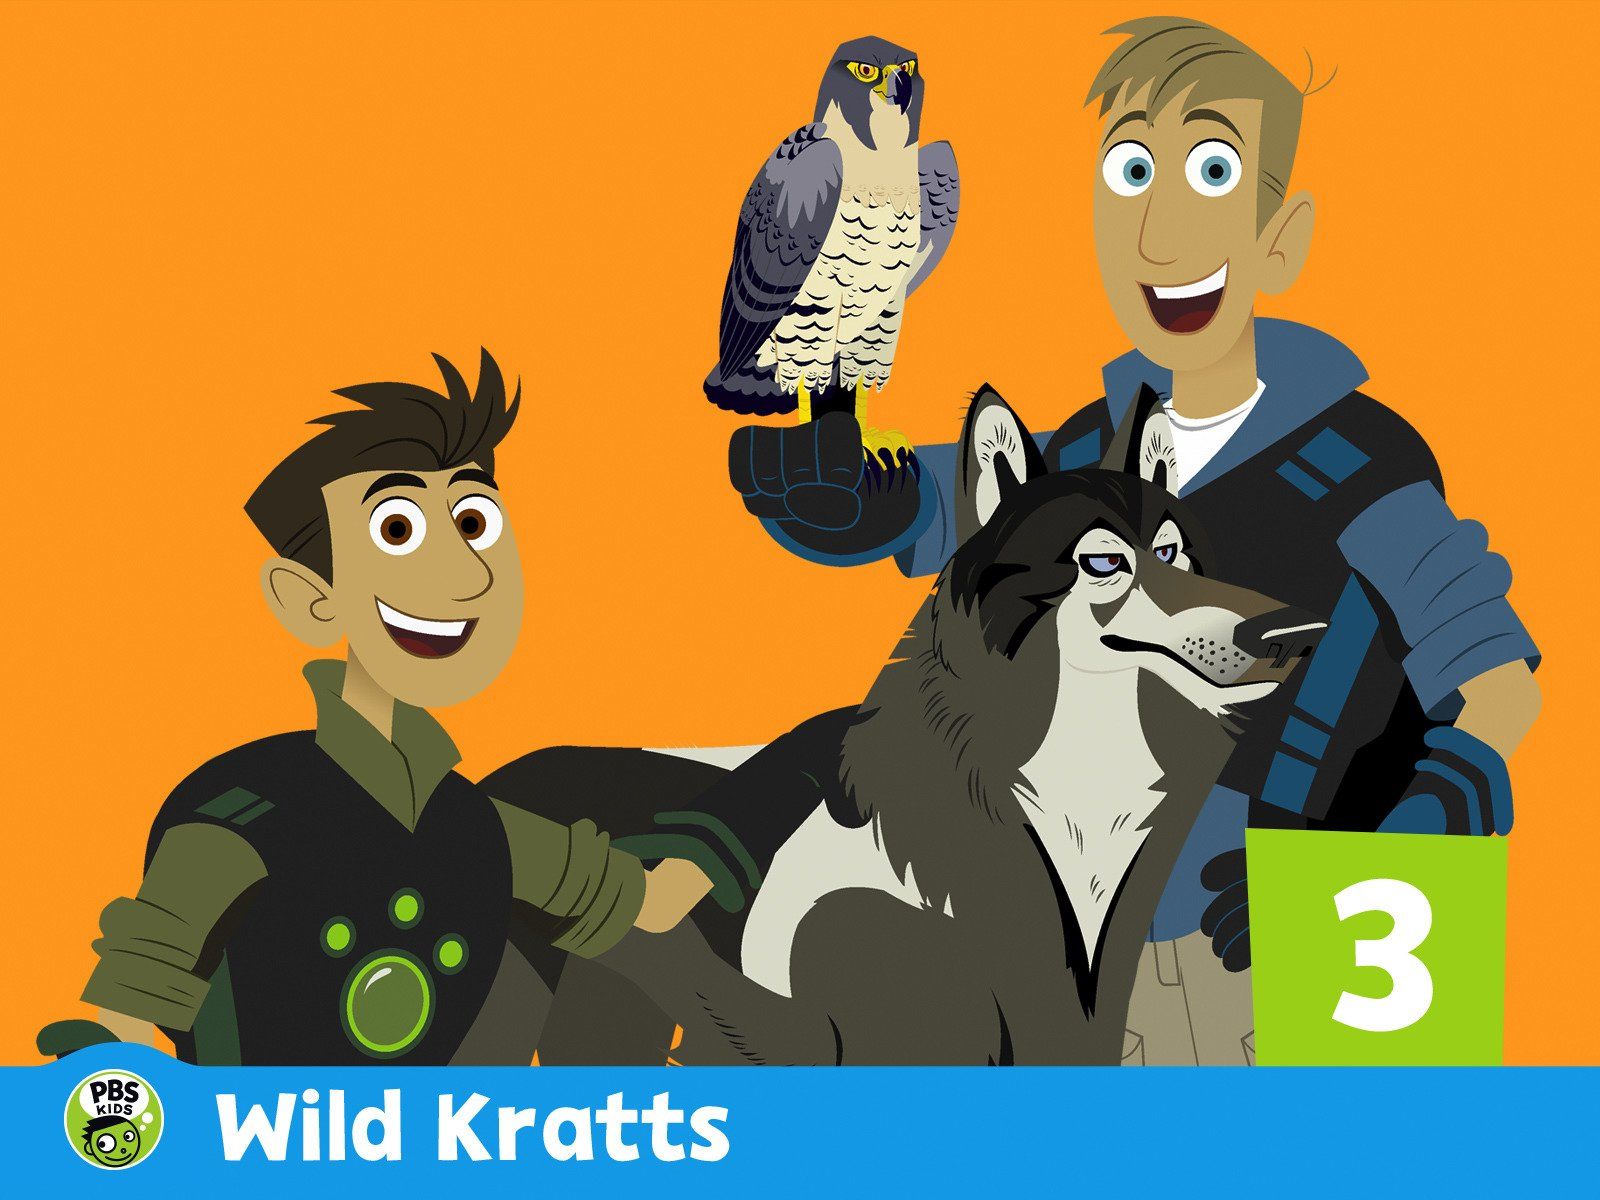 Watch Wild Kratts Season 3.